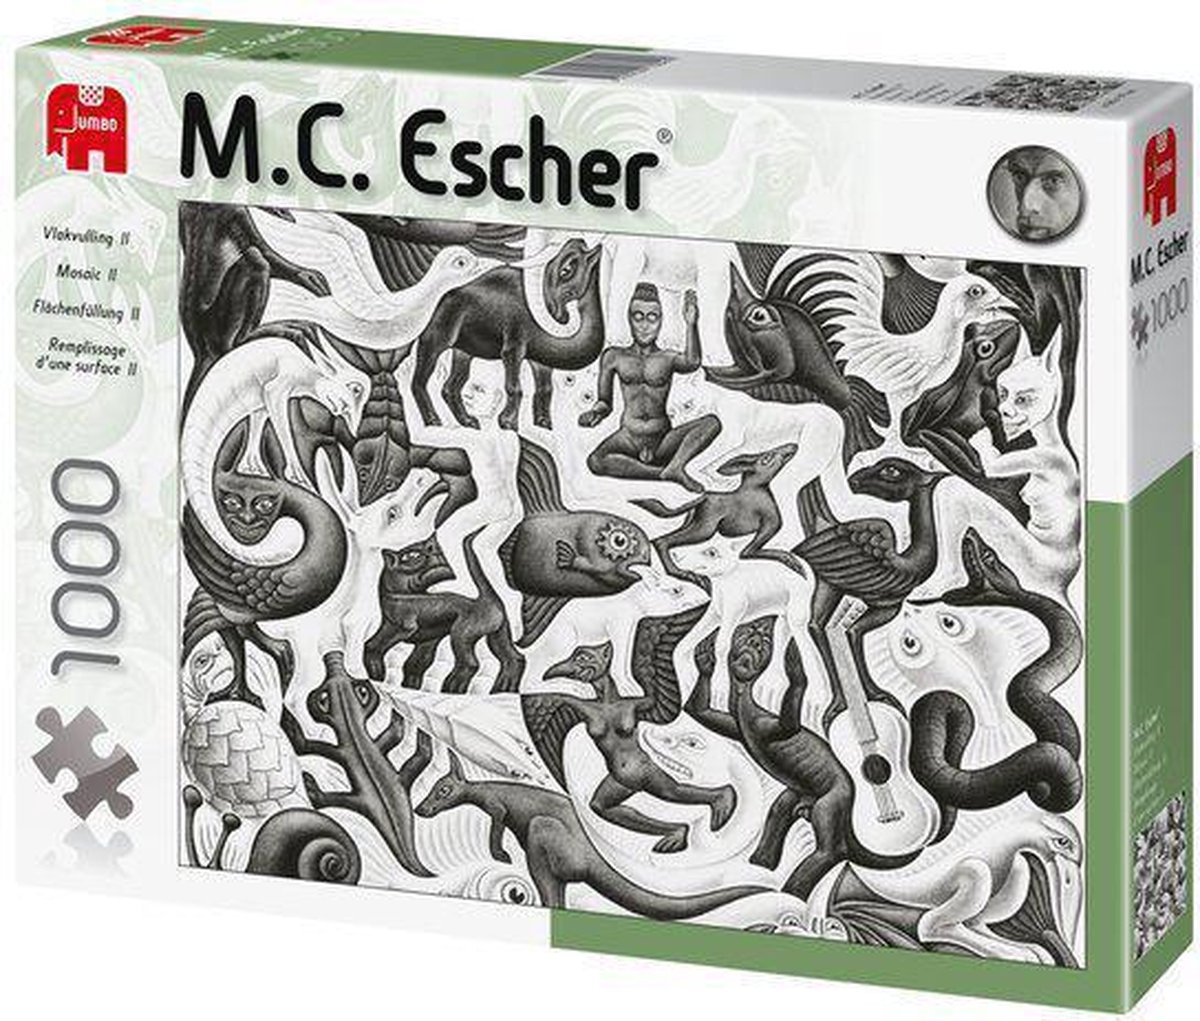 Kan worden genegeerd mat Verwoesten Escher Mosaic II | bol.com